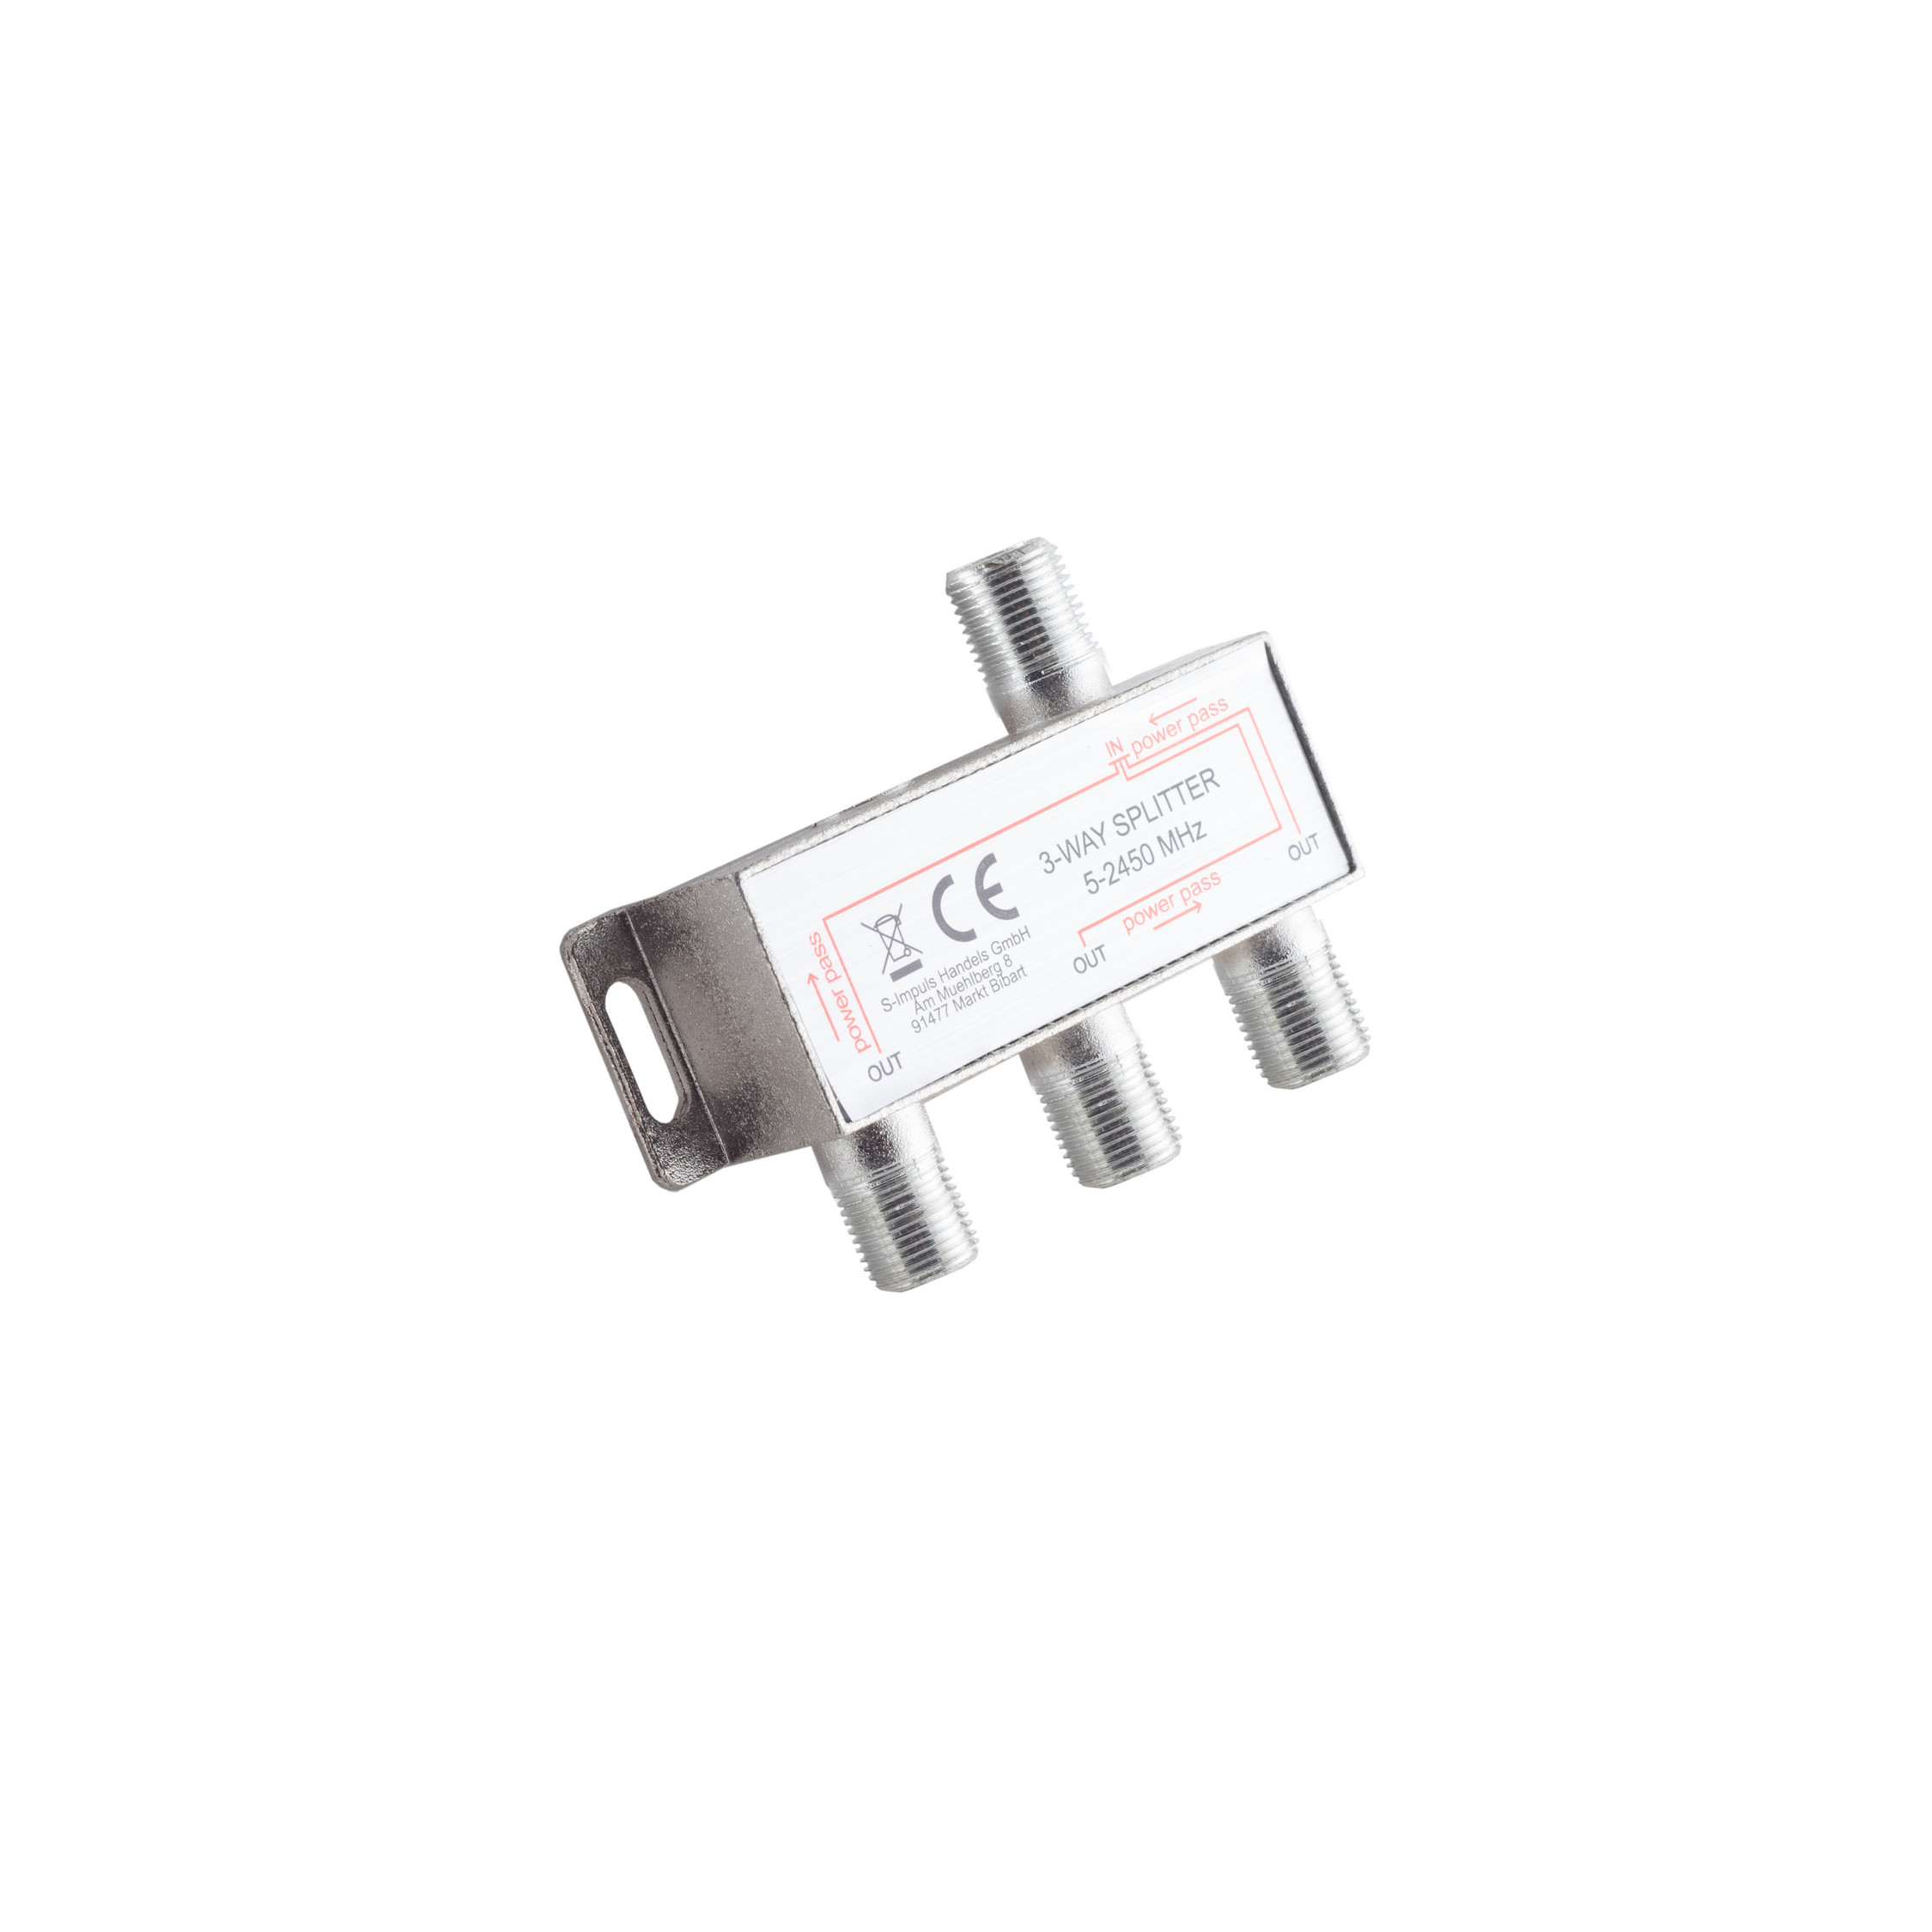 S/CONN MAXIMUM CONNECTIVITY 5-2400 F-Serie; DC Antennen Stammverteiler (Koax) MHz 3-fach; 85dB